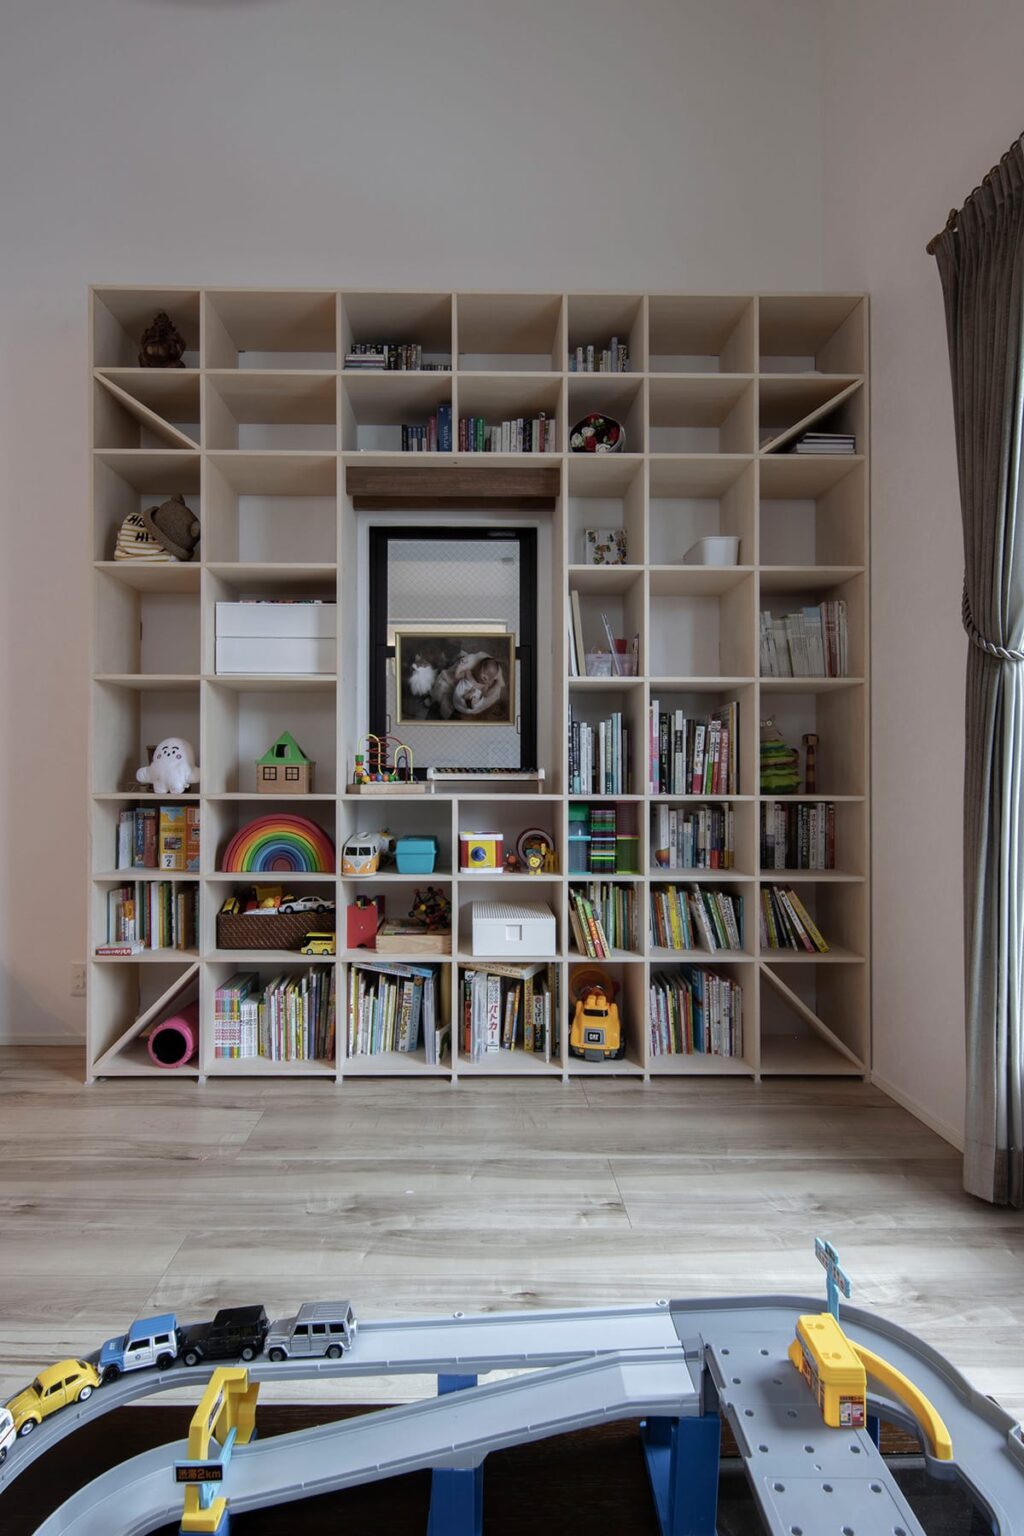 マルゲリータの「Shelf 開口部のある本棚」を、おもちゃ収納棚としてリビングに設置